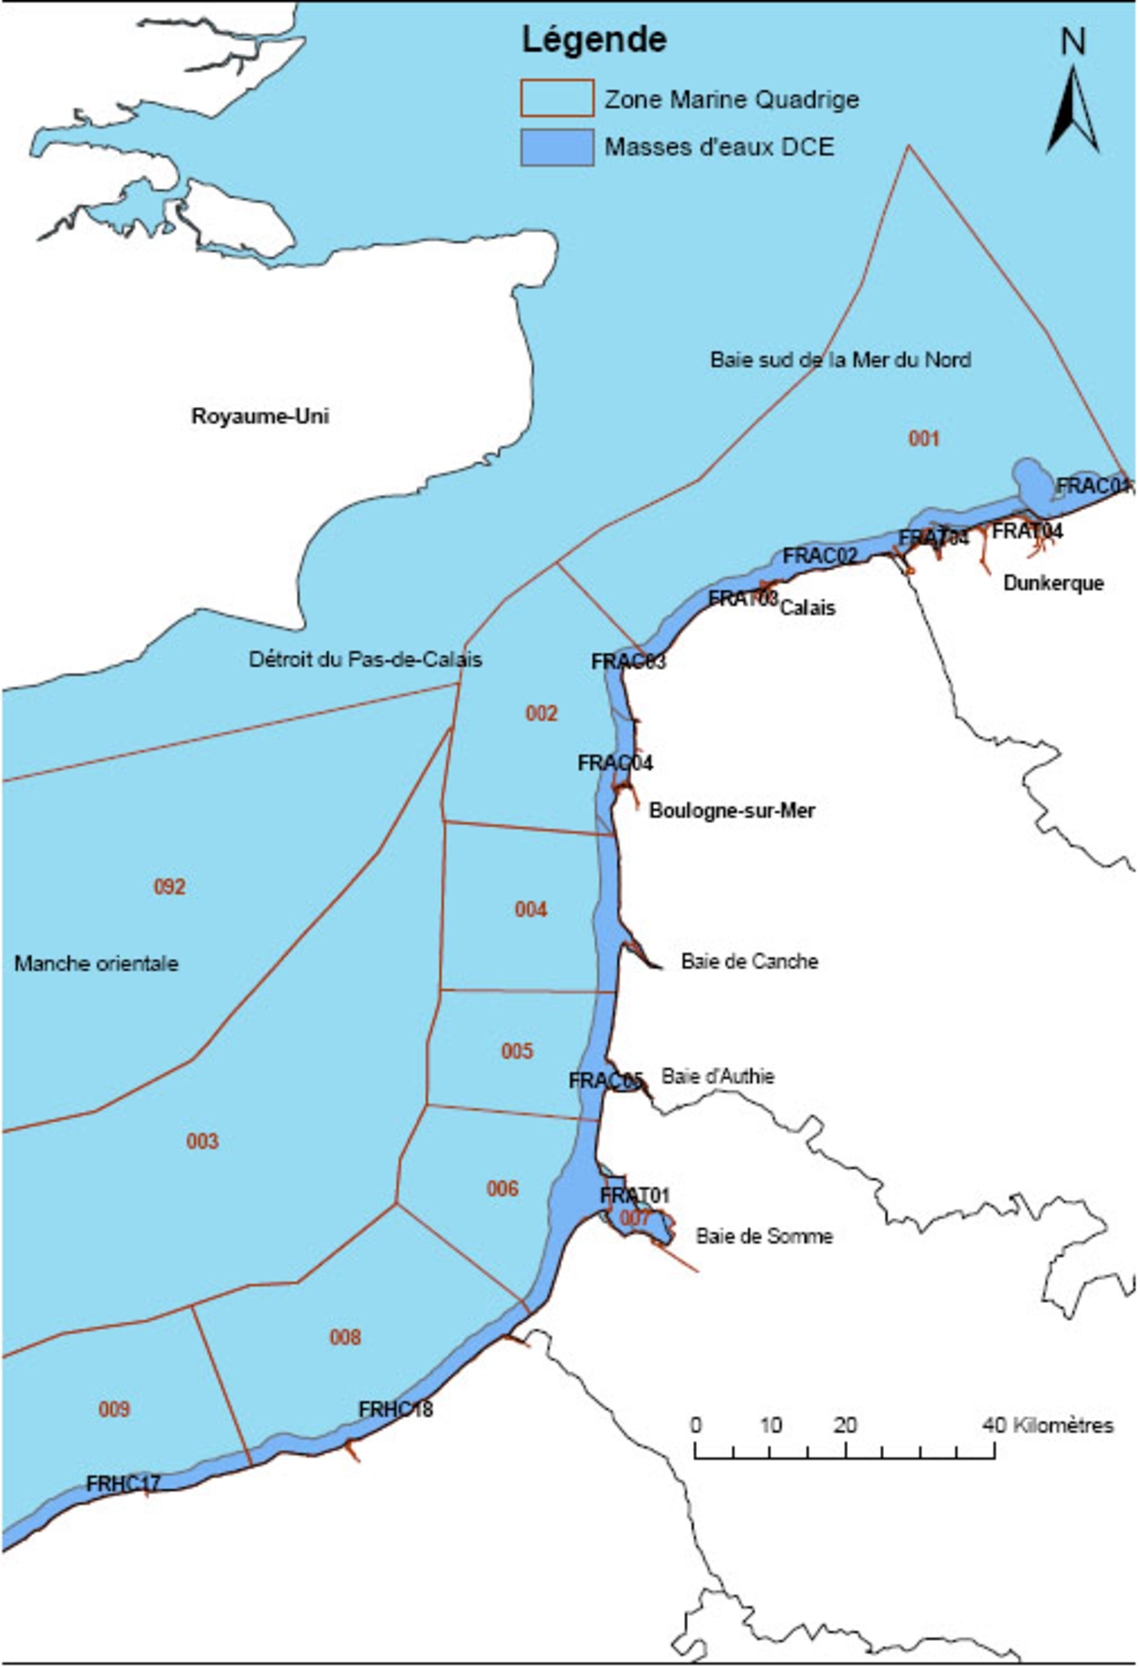 Carte de surveillance des zones du littoral Nord/Pas-de-Calais et Picardie